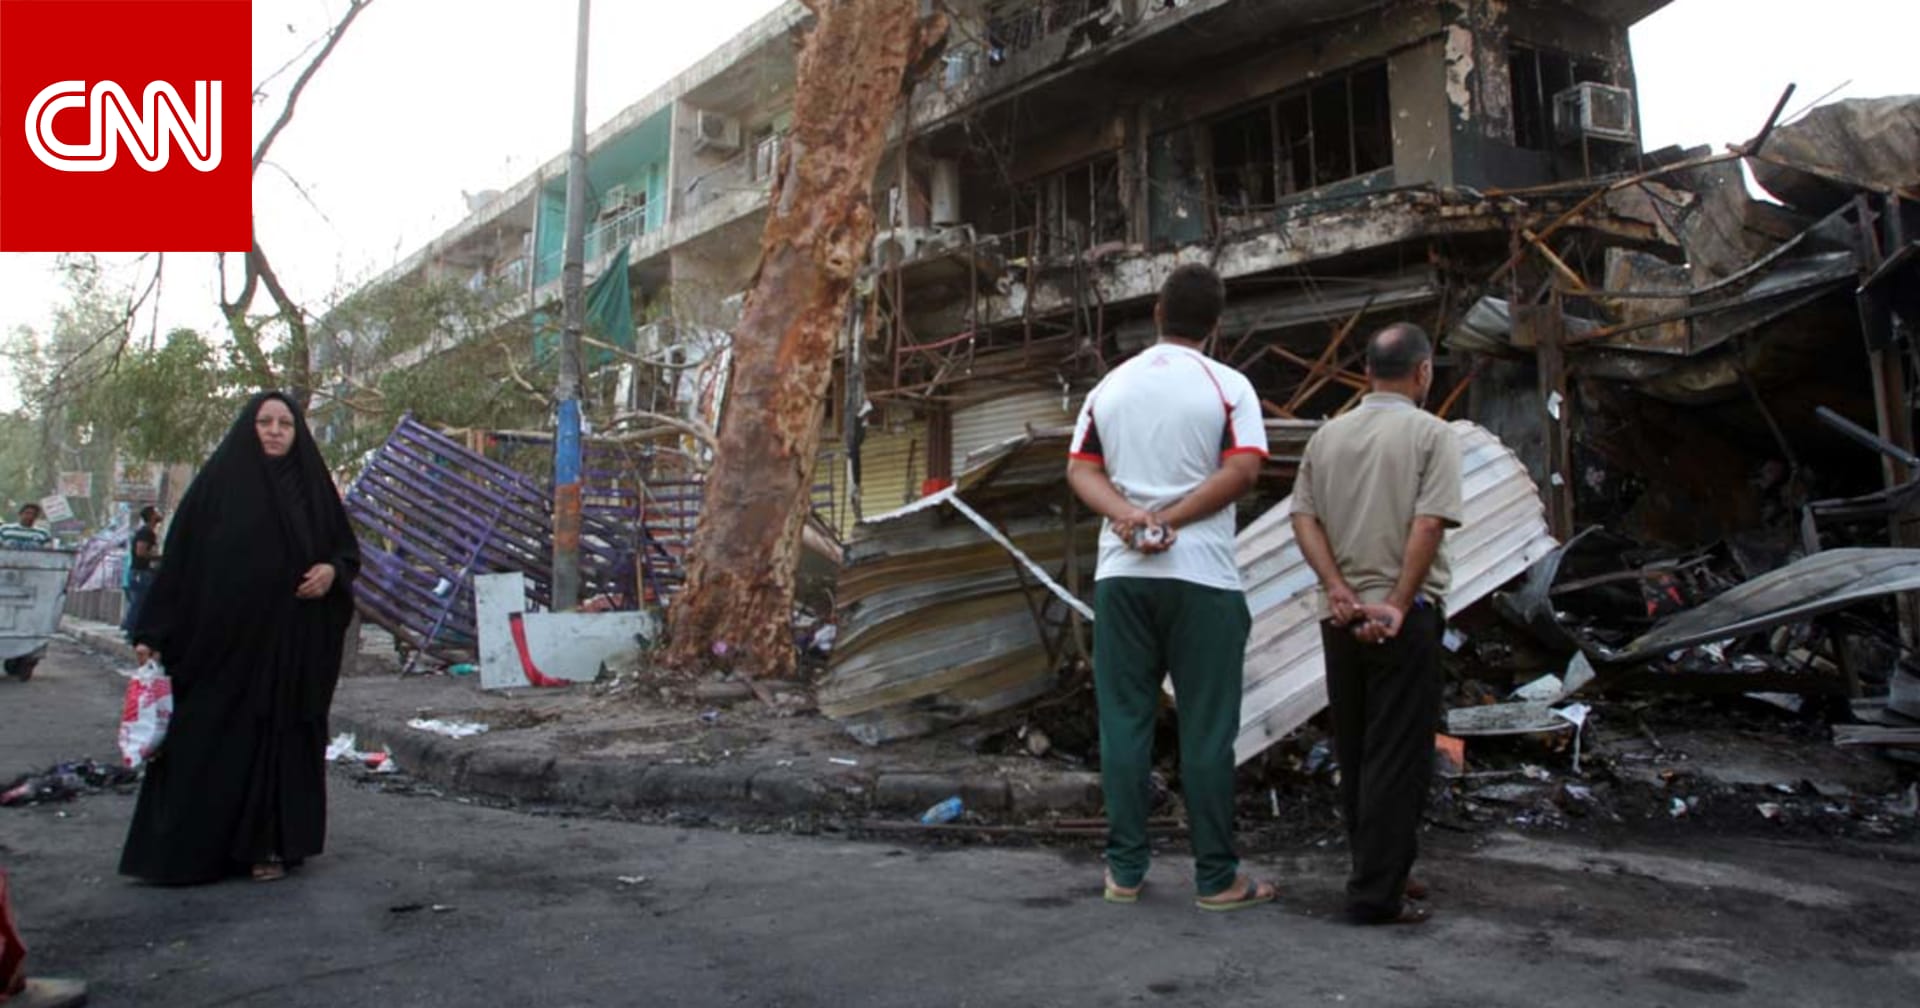 مقتل 12 شخصاً واصابة العشرات بانفجار مفخختين بأحياء شيعية في بغداد Cnn Arabic